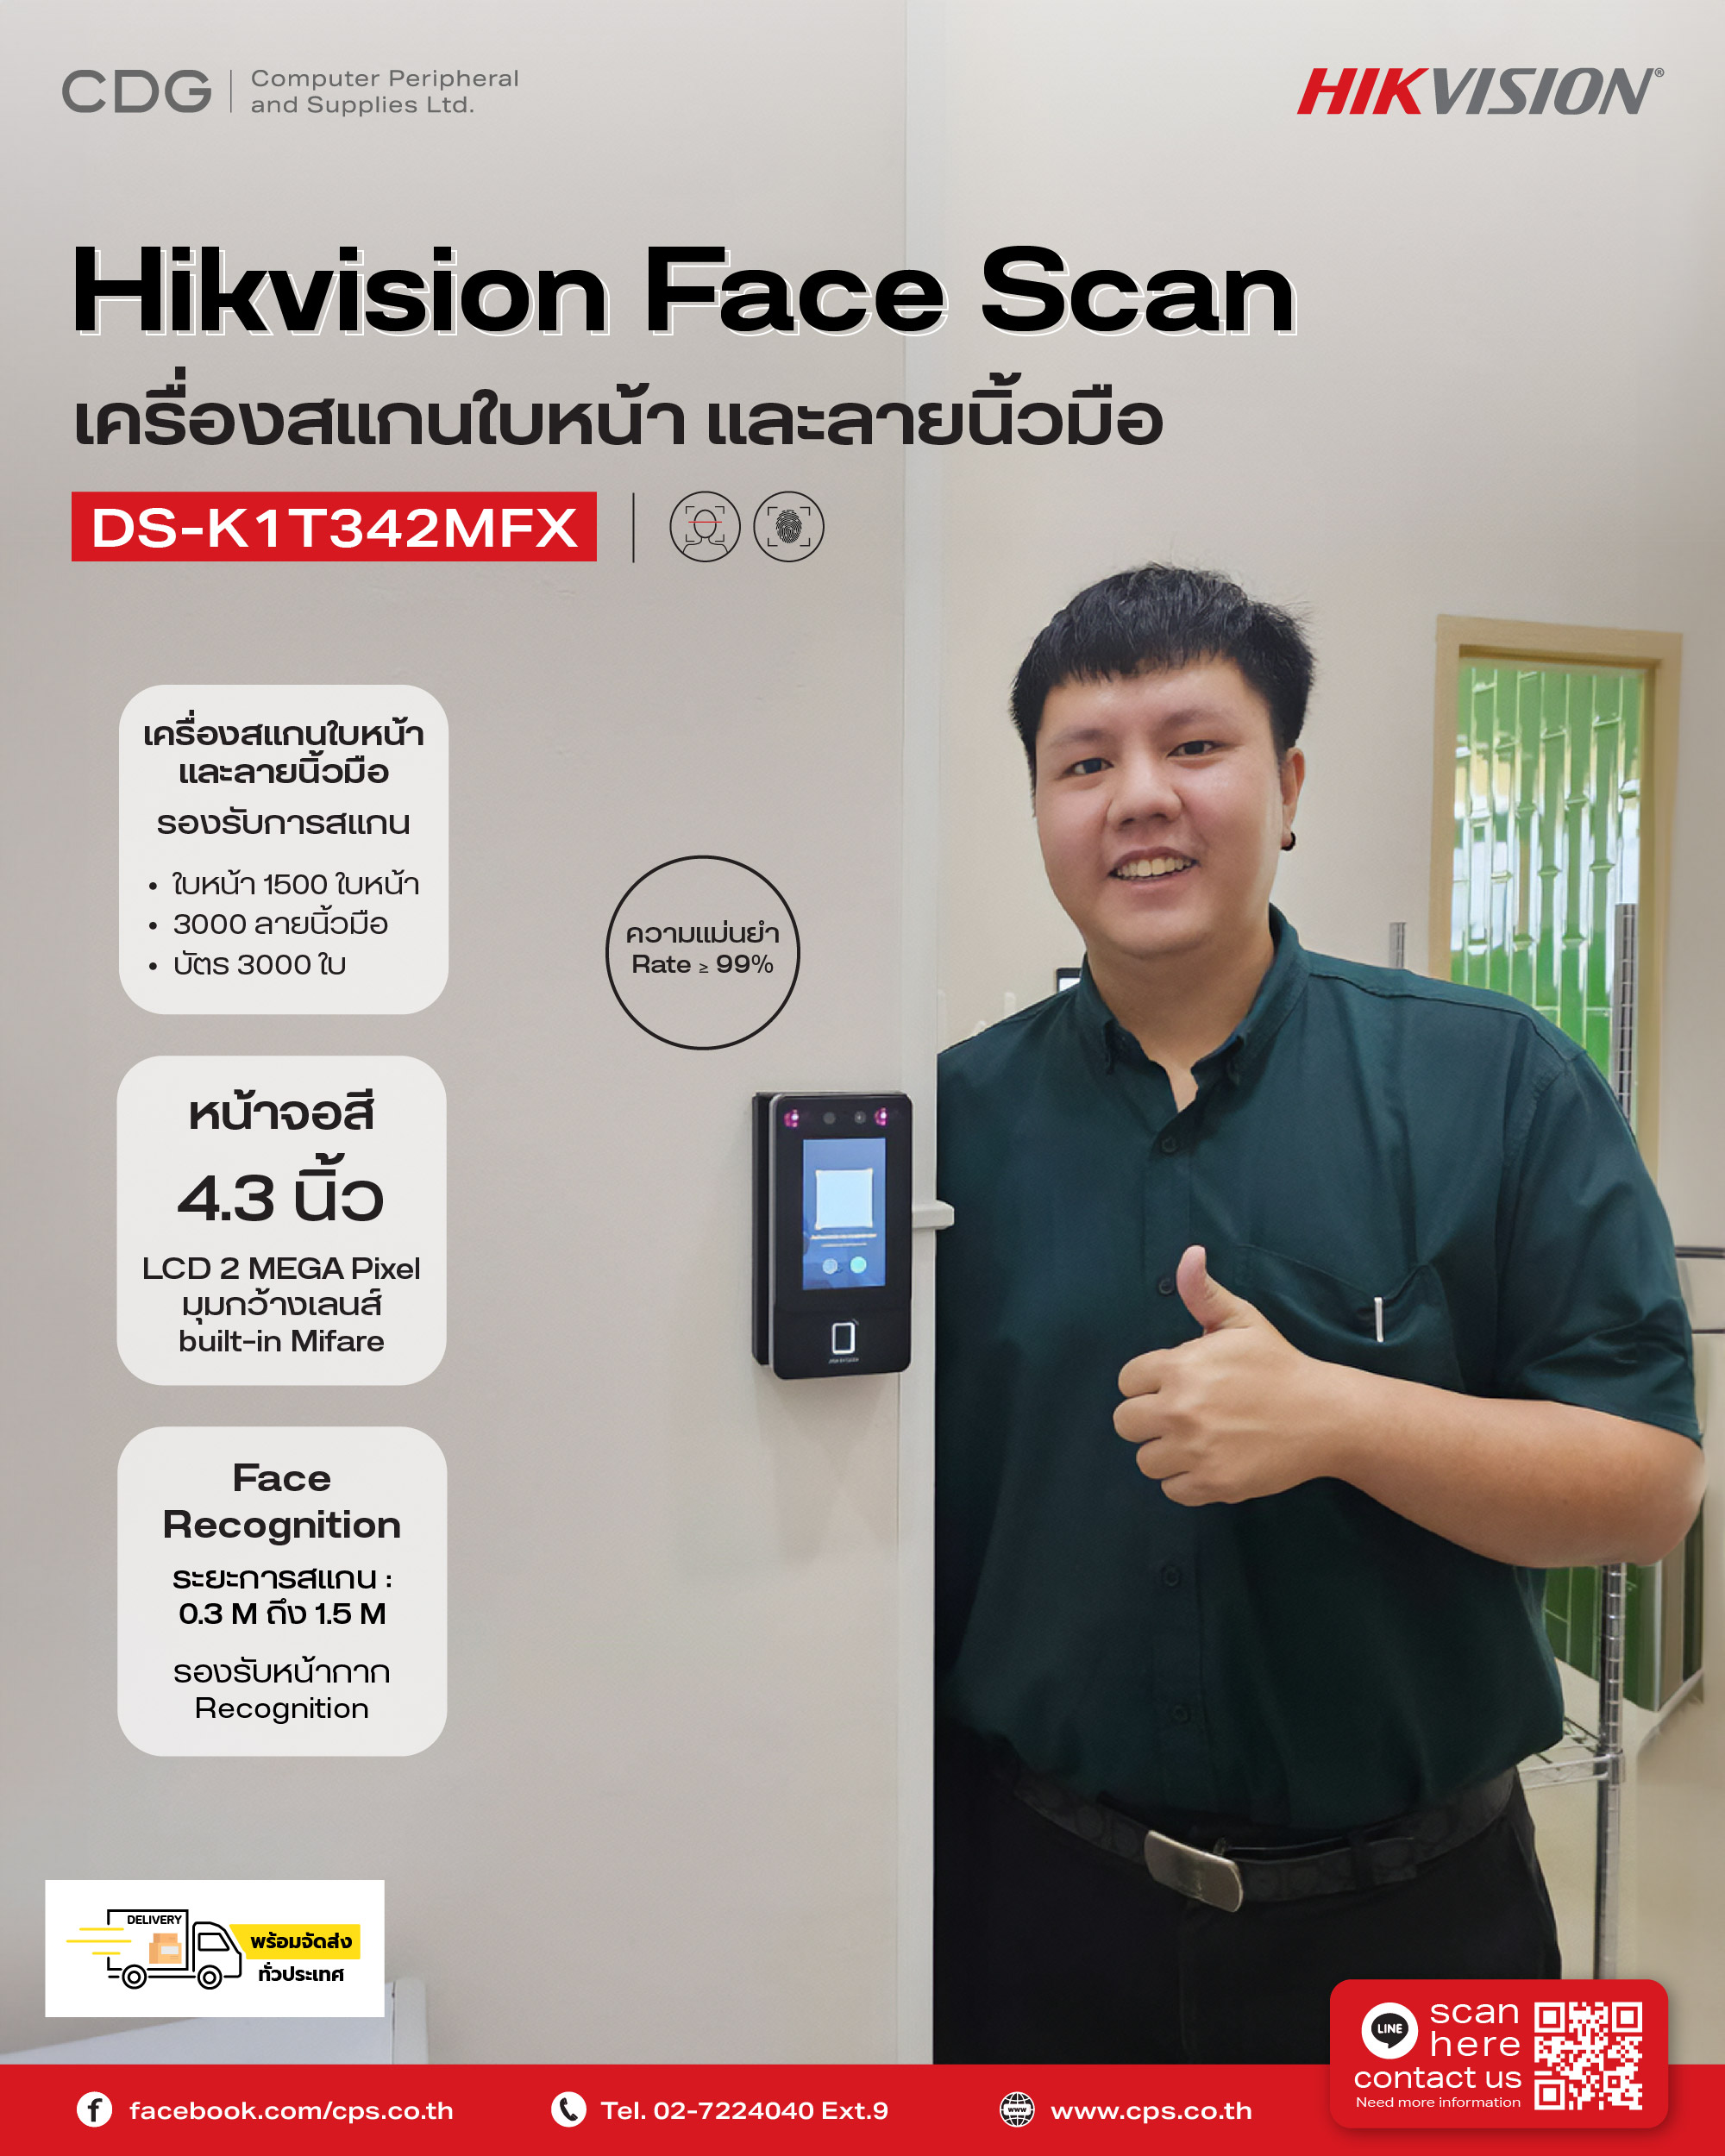 Hikvision Face Scan Recognition Model DS-K1T342MFX